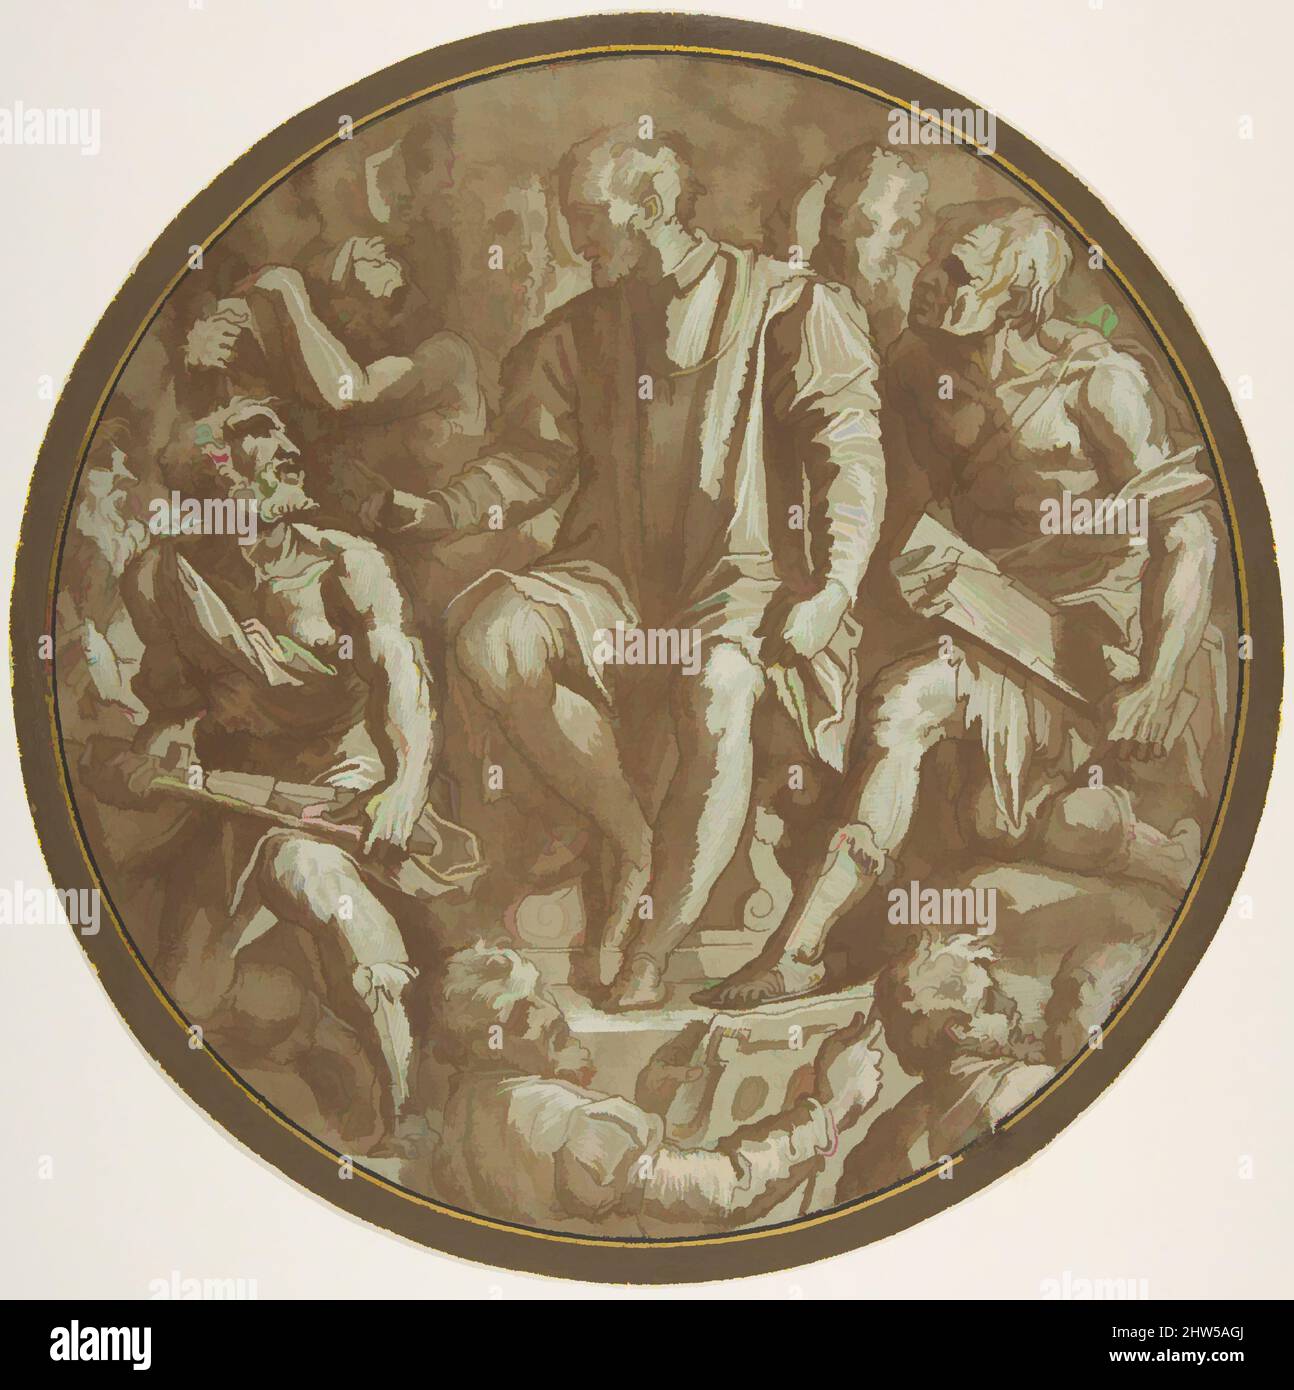 Kunst inspiriert von Großherzog Cosimo I. von der Toskana umgeben von seinen Künstlern., ca. 1556–62, Stift und braune Tinte, Pinsel und braune Wäsche, mit weißer Gouache hervorgehoben, über Spuren von schwarzer Kreide oder Graphit, auf graugrünem Papier, 9-3/16 Zoll (23,4 cm) Durchmesser, Zeichnungen, Werkstatt von Giorgio, Klassische Werke, die von Artotop mit einem Schuss Moderne modernisiert wurden. Formen, Farbe und Wert, auffällige visuelle Wirkung auf Kunst. Emotionen durch Freiheit von Kunstwerken auf zeitgemäße Weise. Eine zeitlose Botschaft, die eine wild kreative neue Richtung verfolgt. Künstler, die sich dem digitalen Medium zuwenden und die Artotop NFT erschaffen Stockfoto